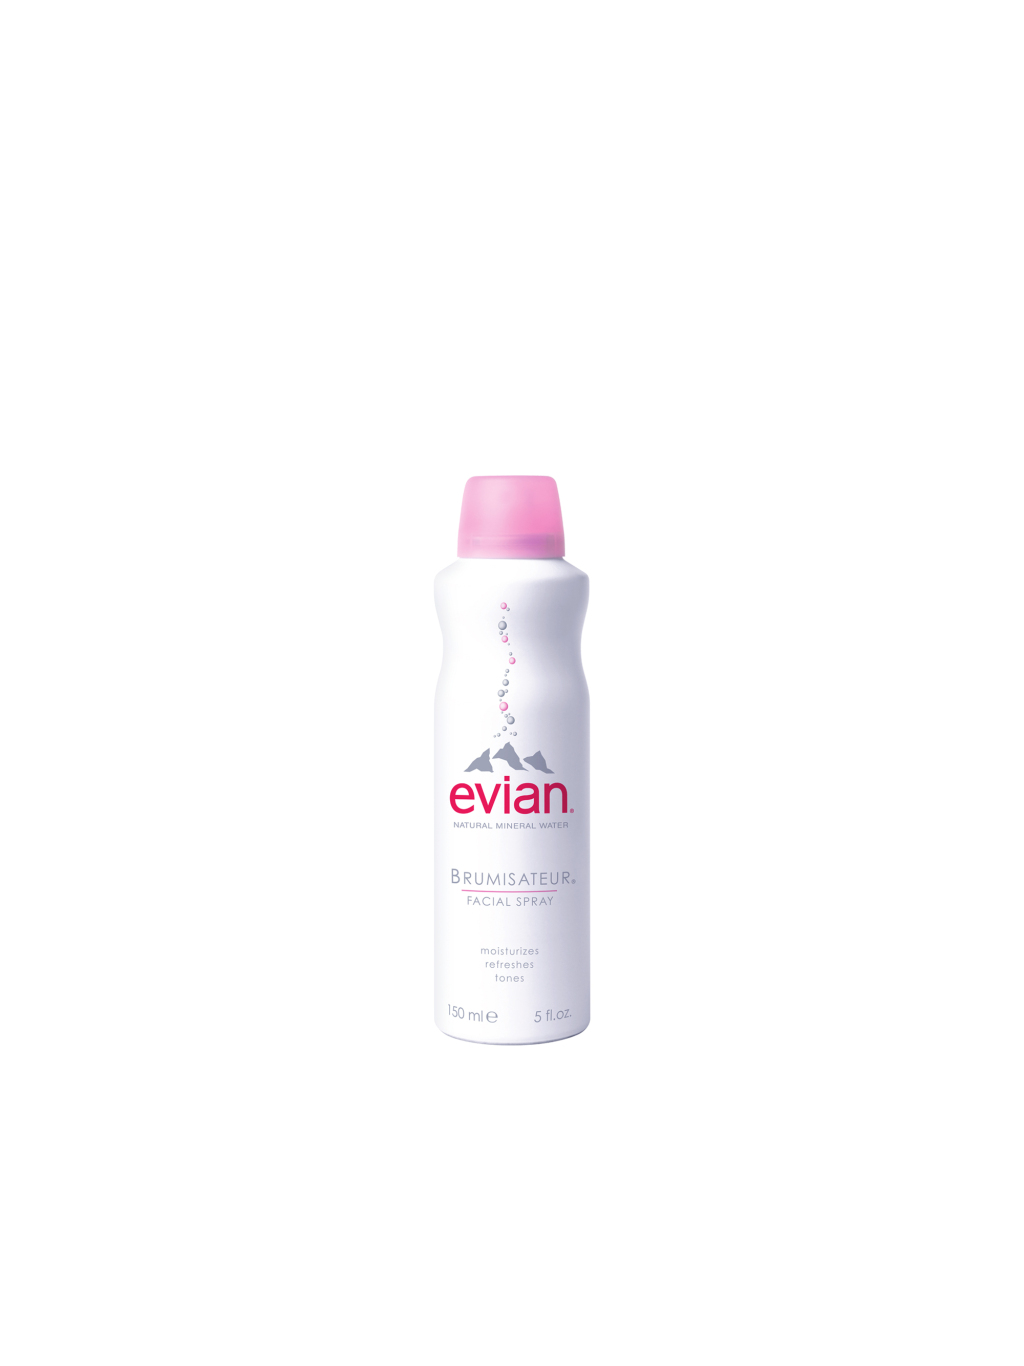 Evian Face spray amazon